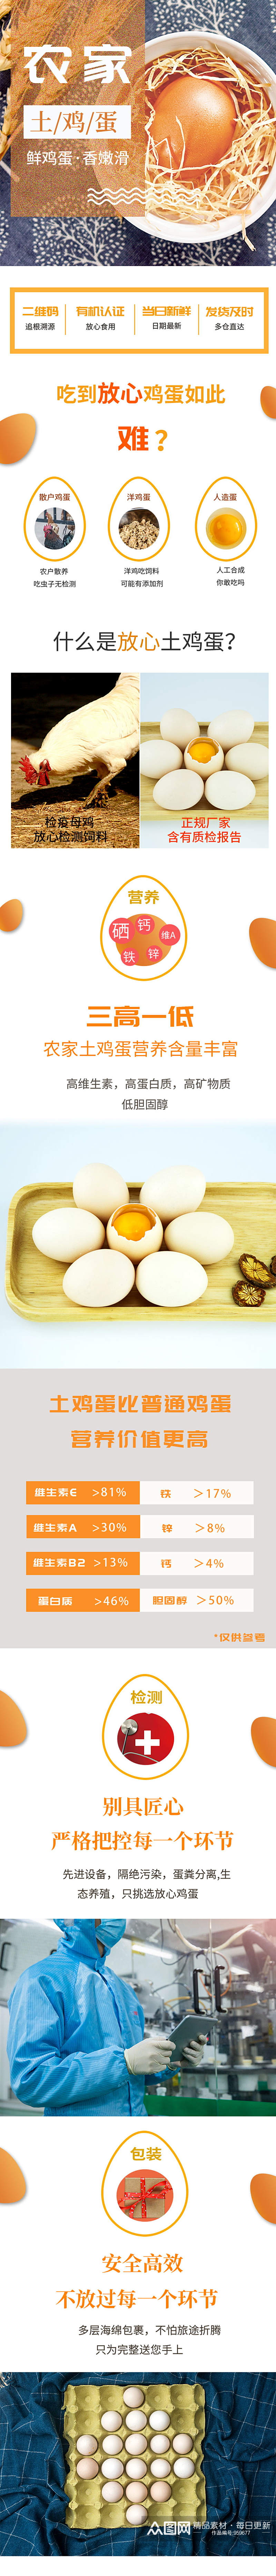 生鲜食品绿壳土鸡蛋详情素材